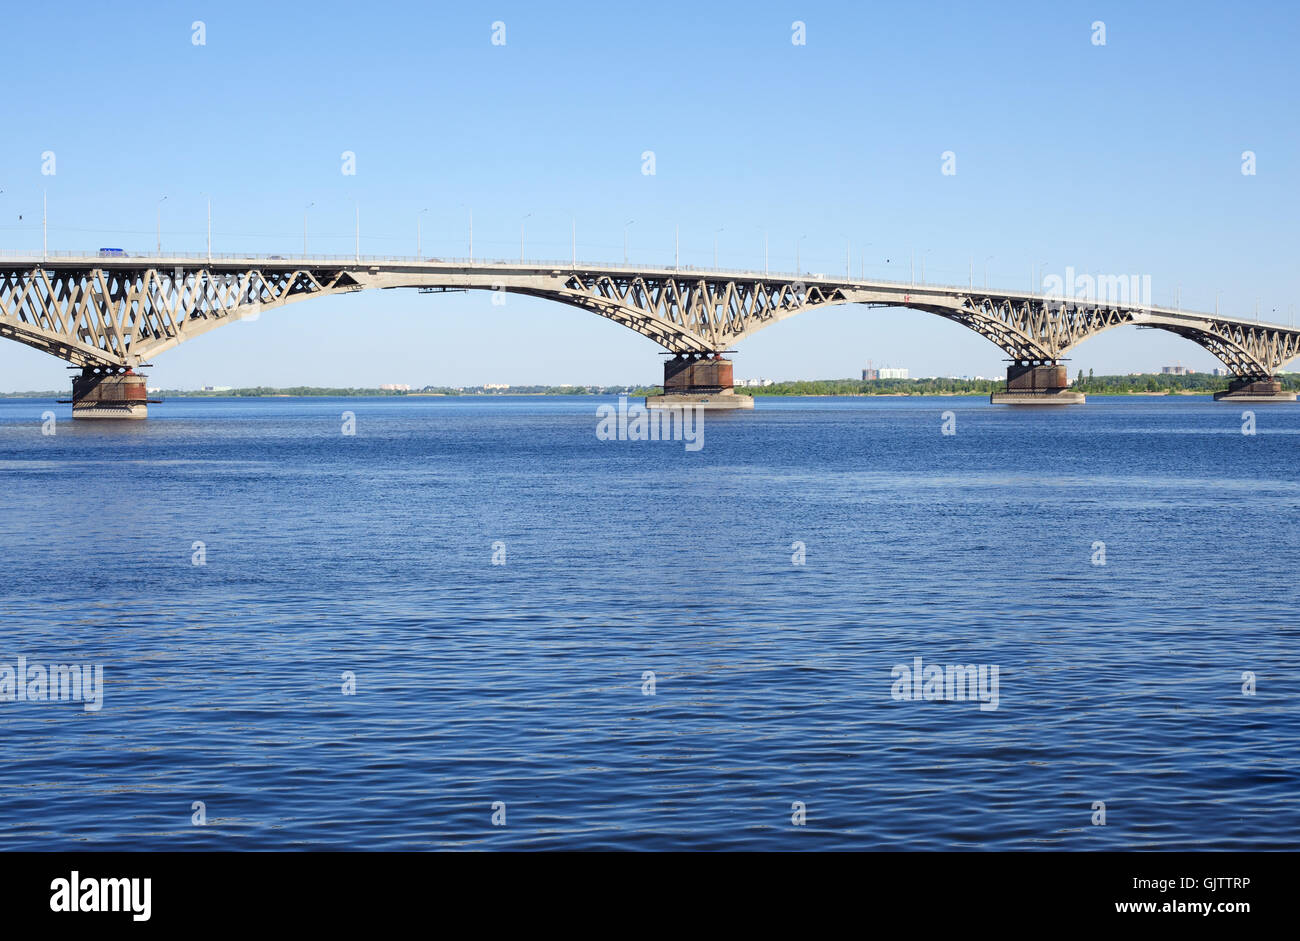 Река Волга Саратов мост в Архангельске